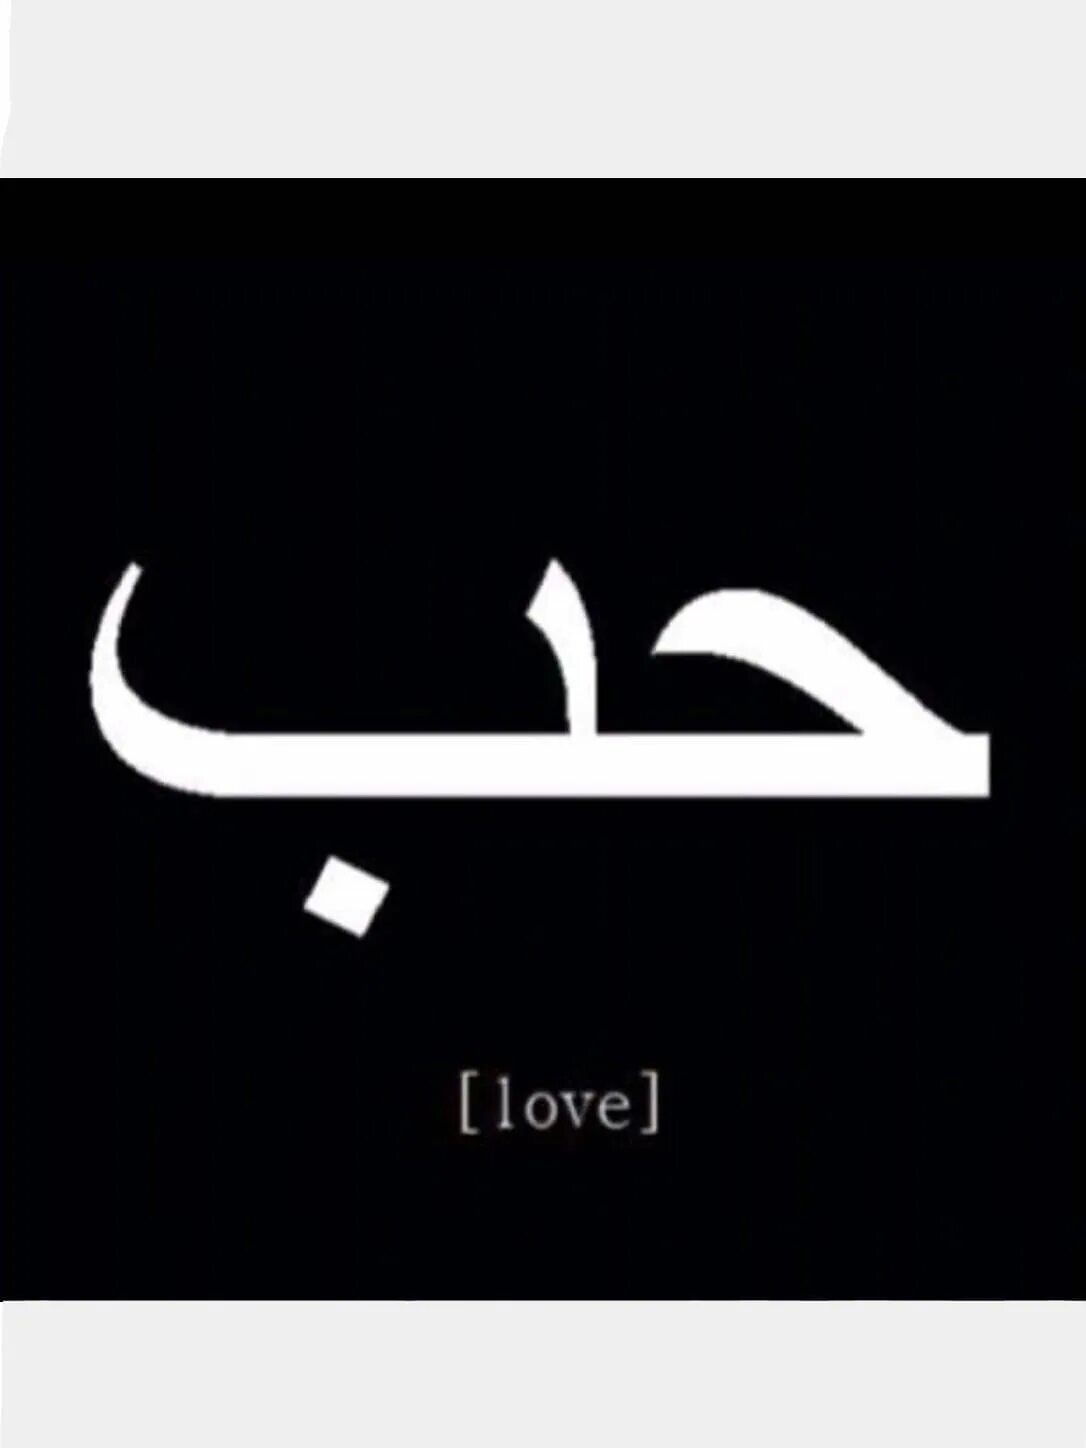 Магазин на арабском. Любовь на арабском. Арабские надписи. Слово любовь на арабском. Love на арабском.